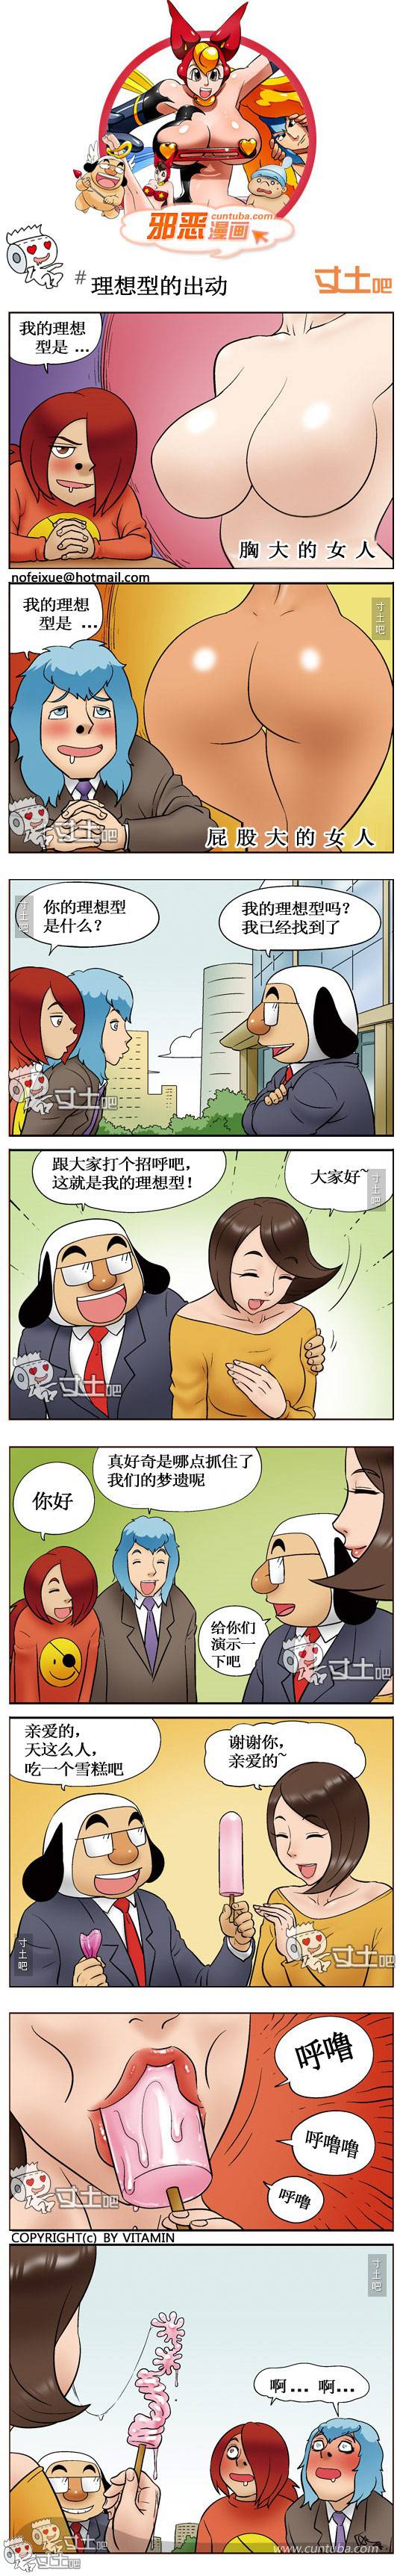 邪恶漫画爆笑囧图第293刊：口舌如簧的女人